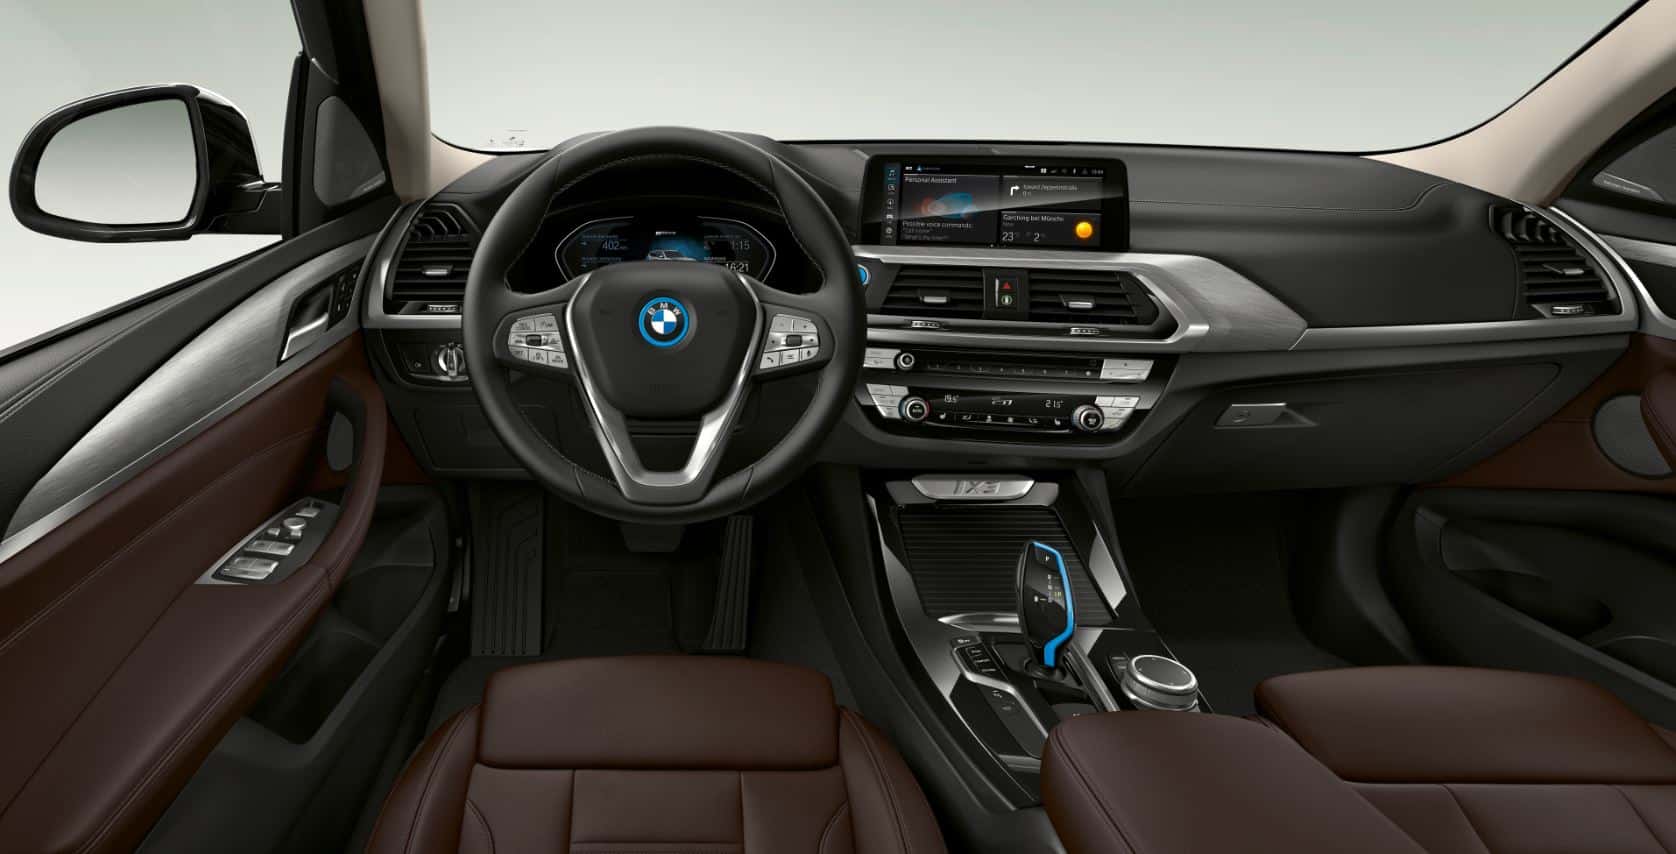 The BMW iX3 already has prices: from 72,300 euros